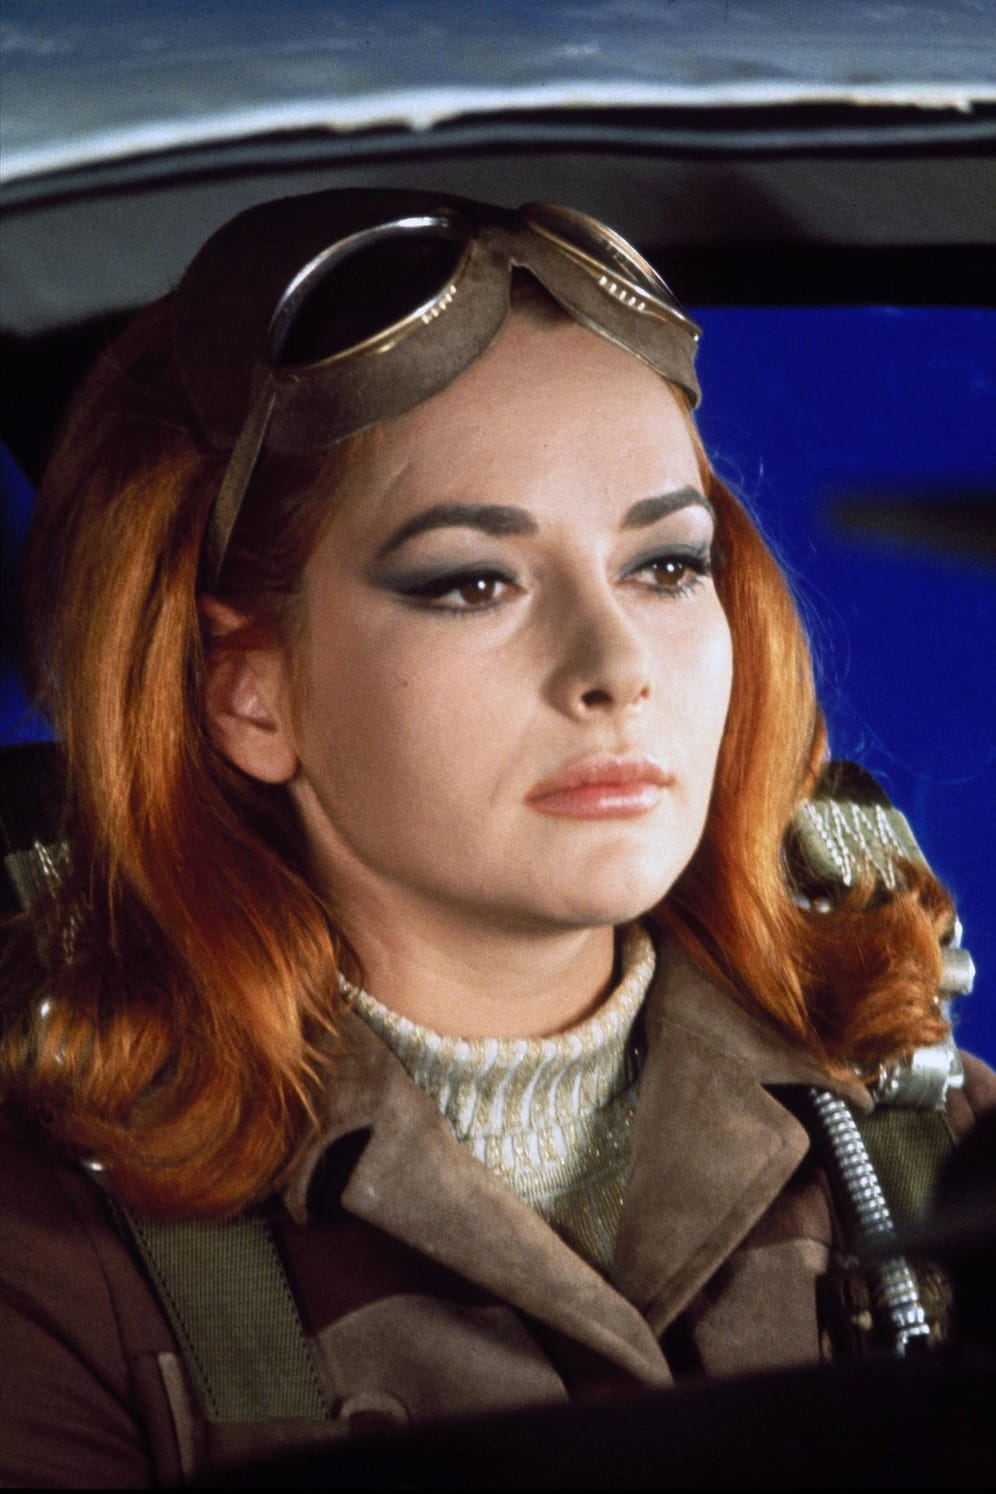 Karin Dor als Helga Brandt in "Man lebt nur zweimal" (1967)